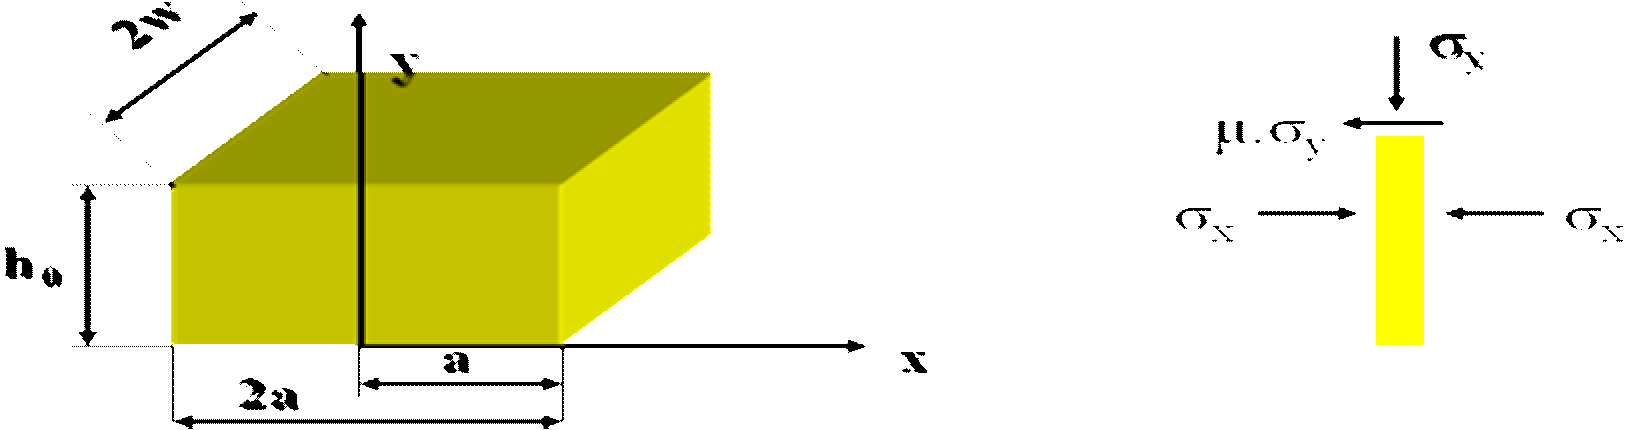 e μ( ax) / h Döve kuvveti: a Bu integralin sonucu w w a (- ) (- y μ. a. h olur..a.w dx. e μ( ax) / h. dx).w.a. Aynı zaanda Şayet parça silindirik koordinatlarla verilişse; Döve gerilesi: z -( ).